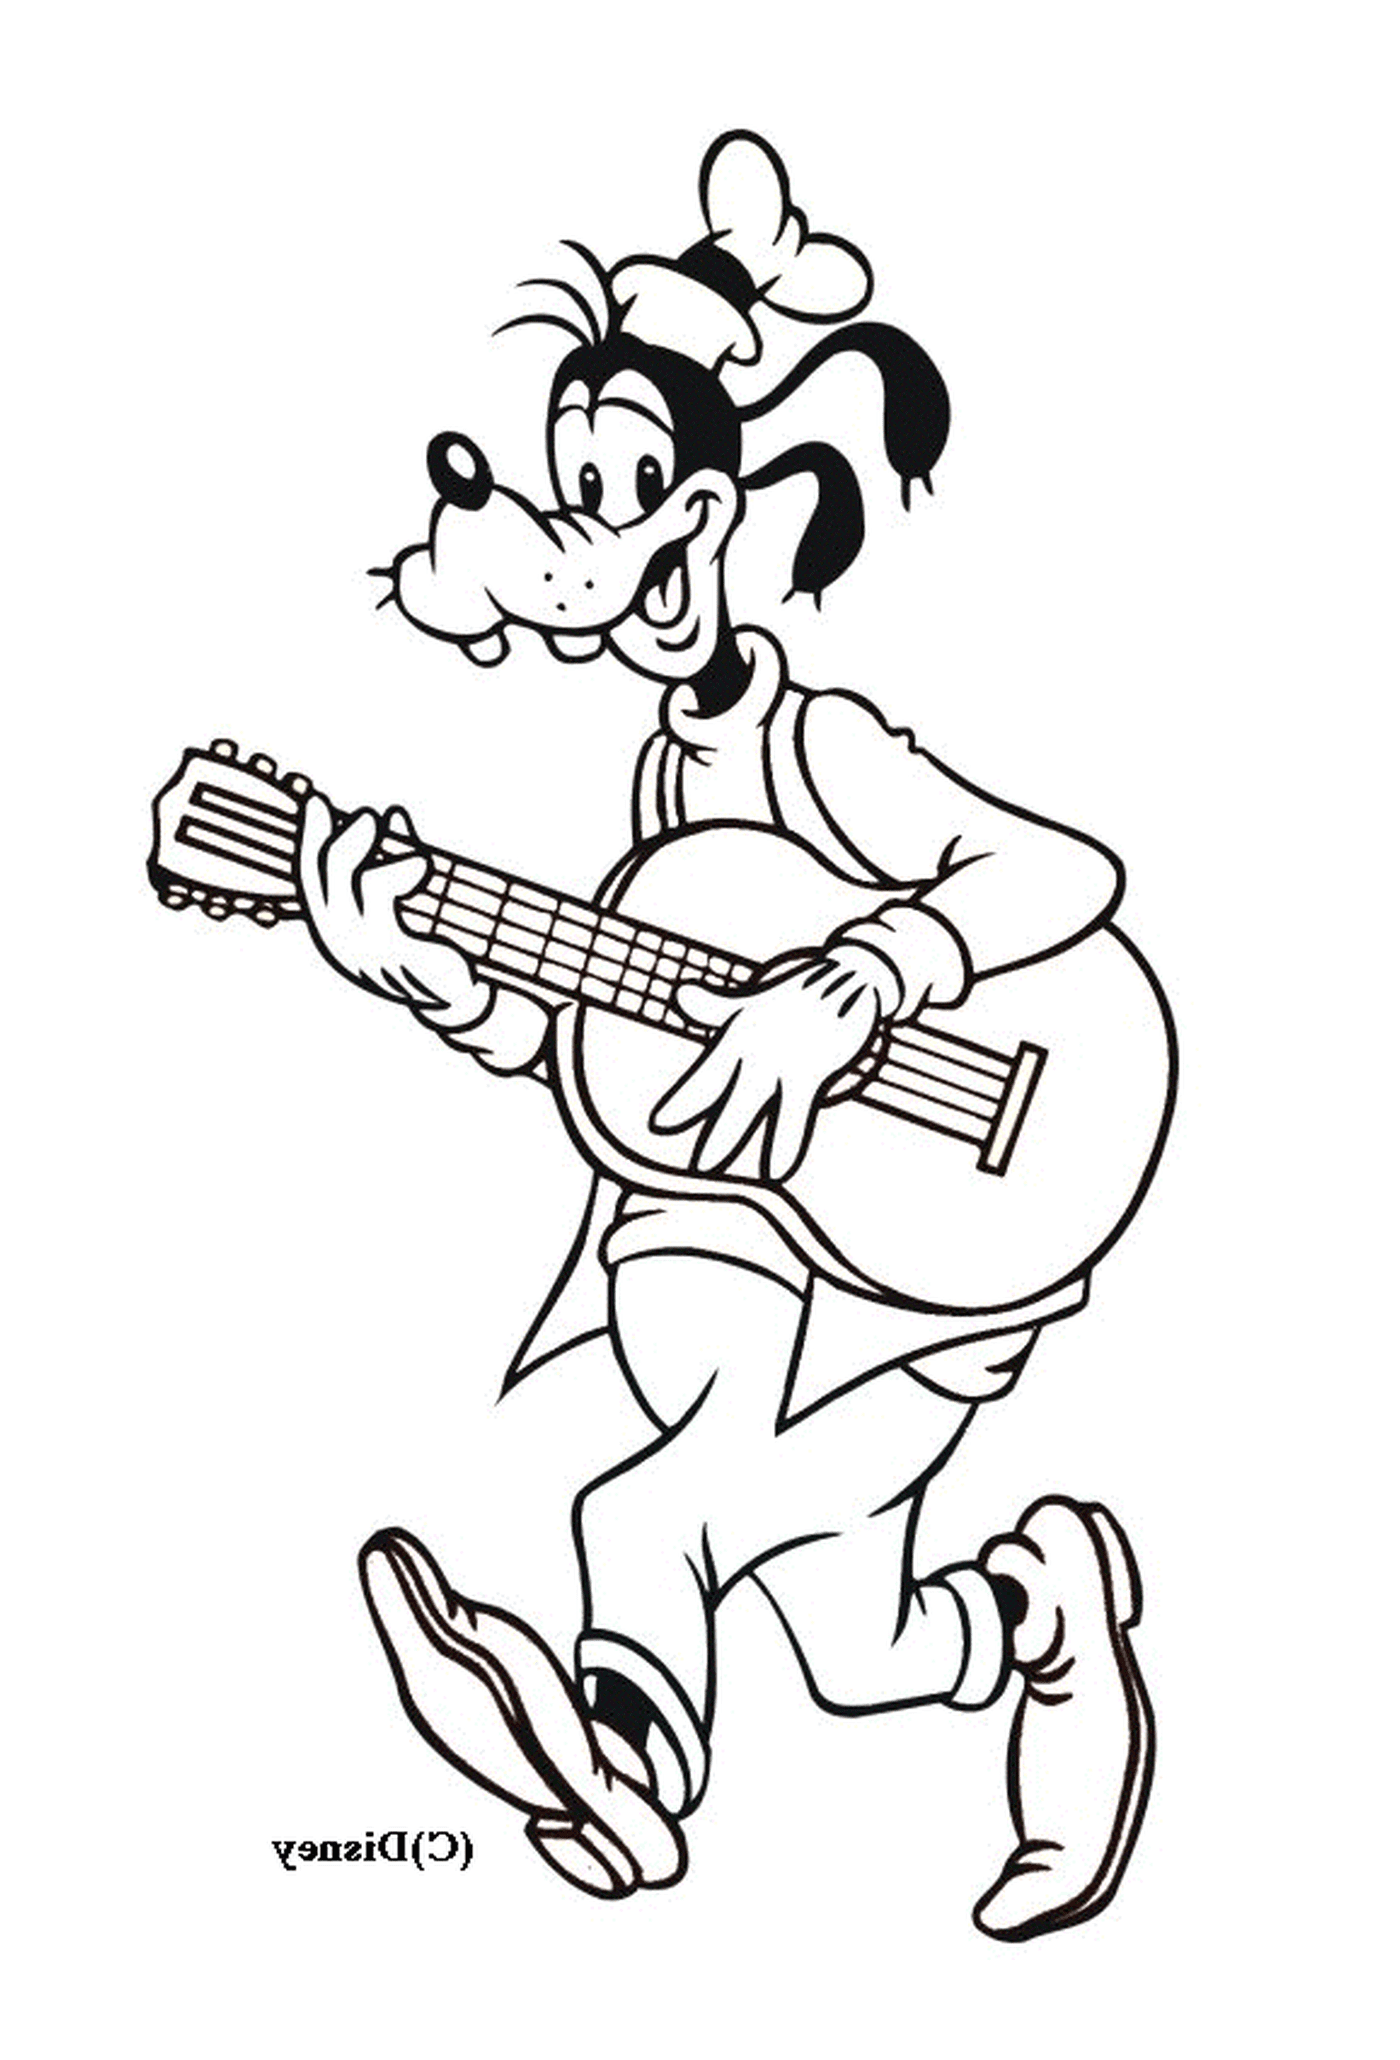  Dingo toca la guitarra mientras está de pie 